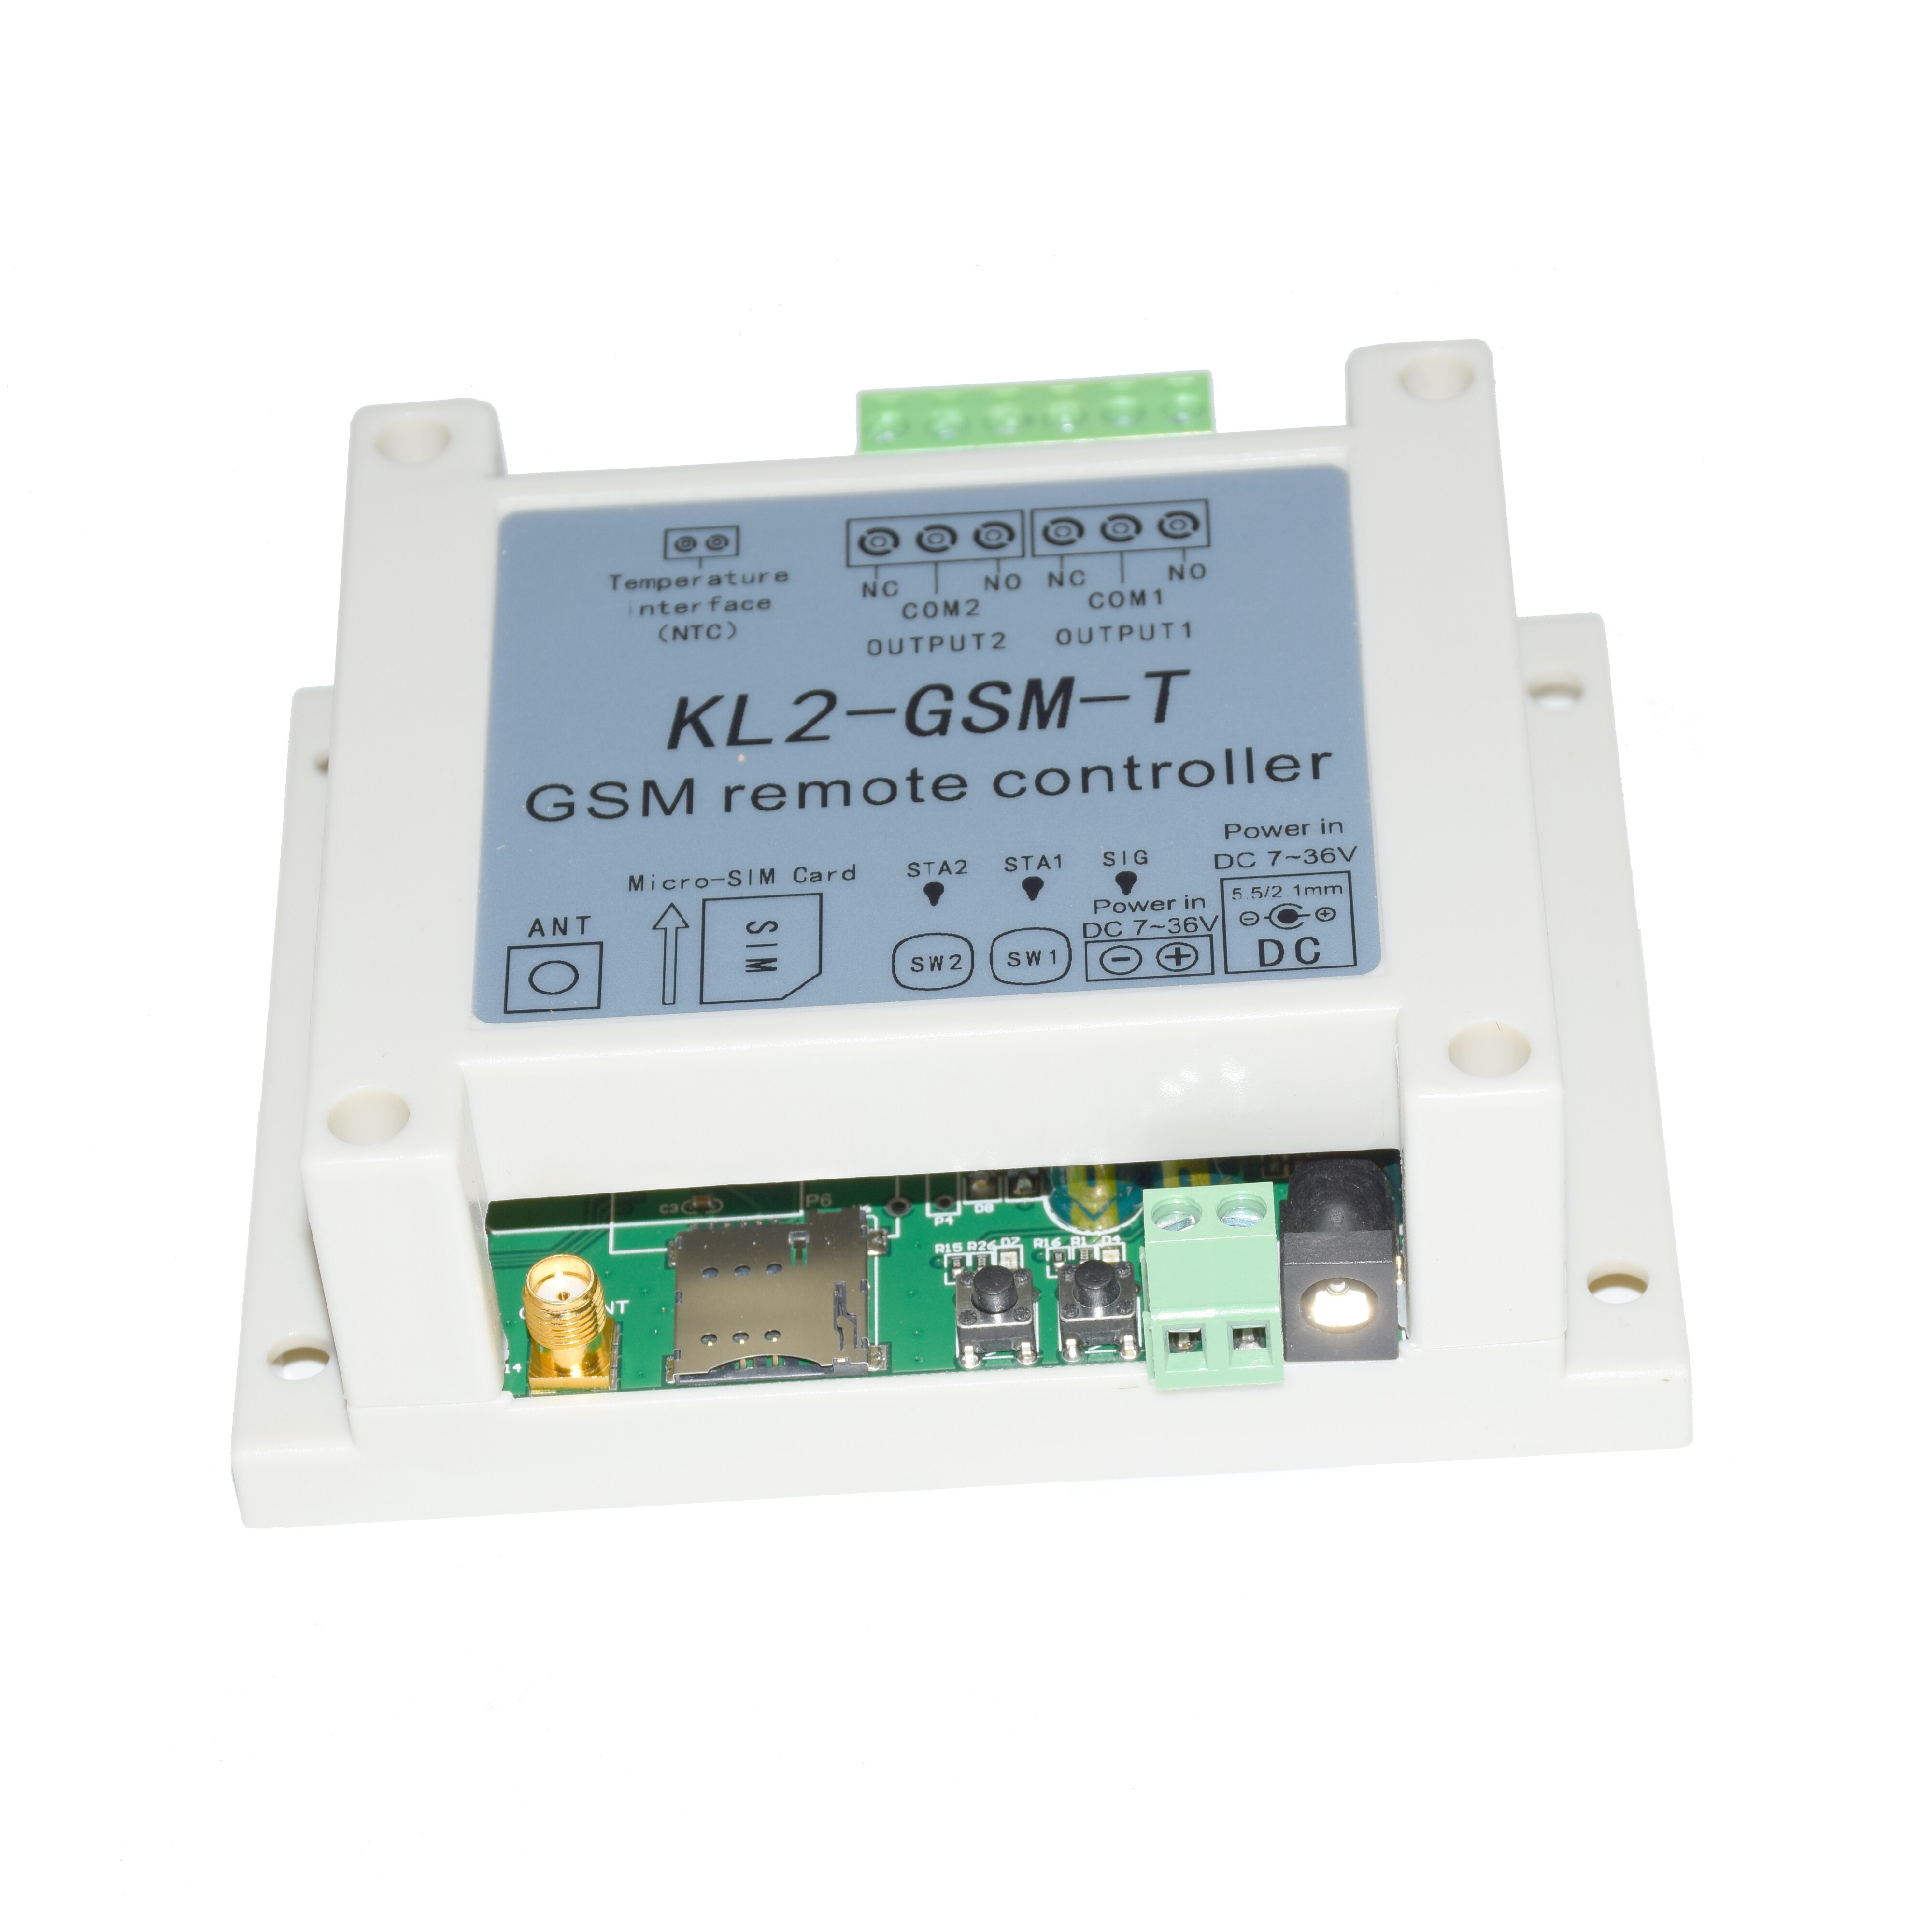 GSM twee relais afstandsbediening schakelaar access controller KL2-GSM met NTC TEMPERATUURSENSOR voor water elektrische verwarming